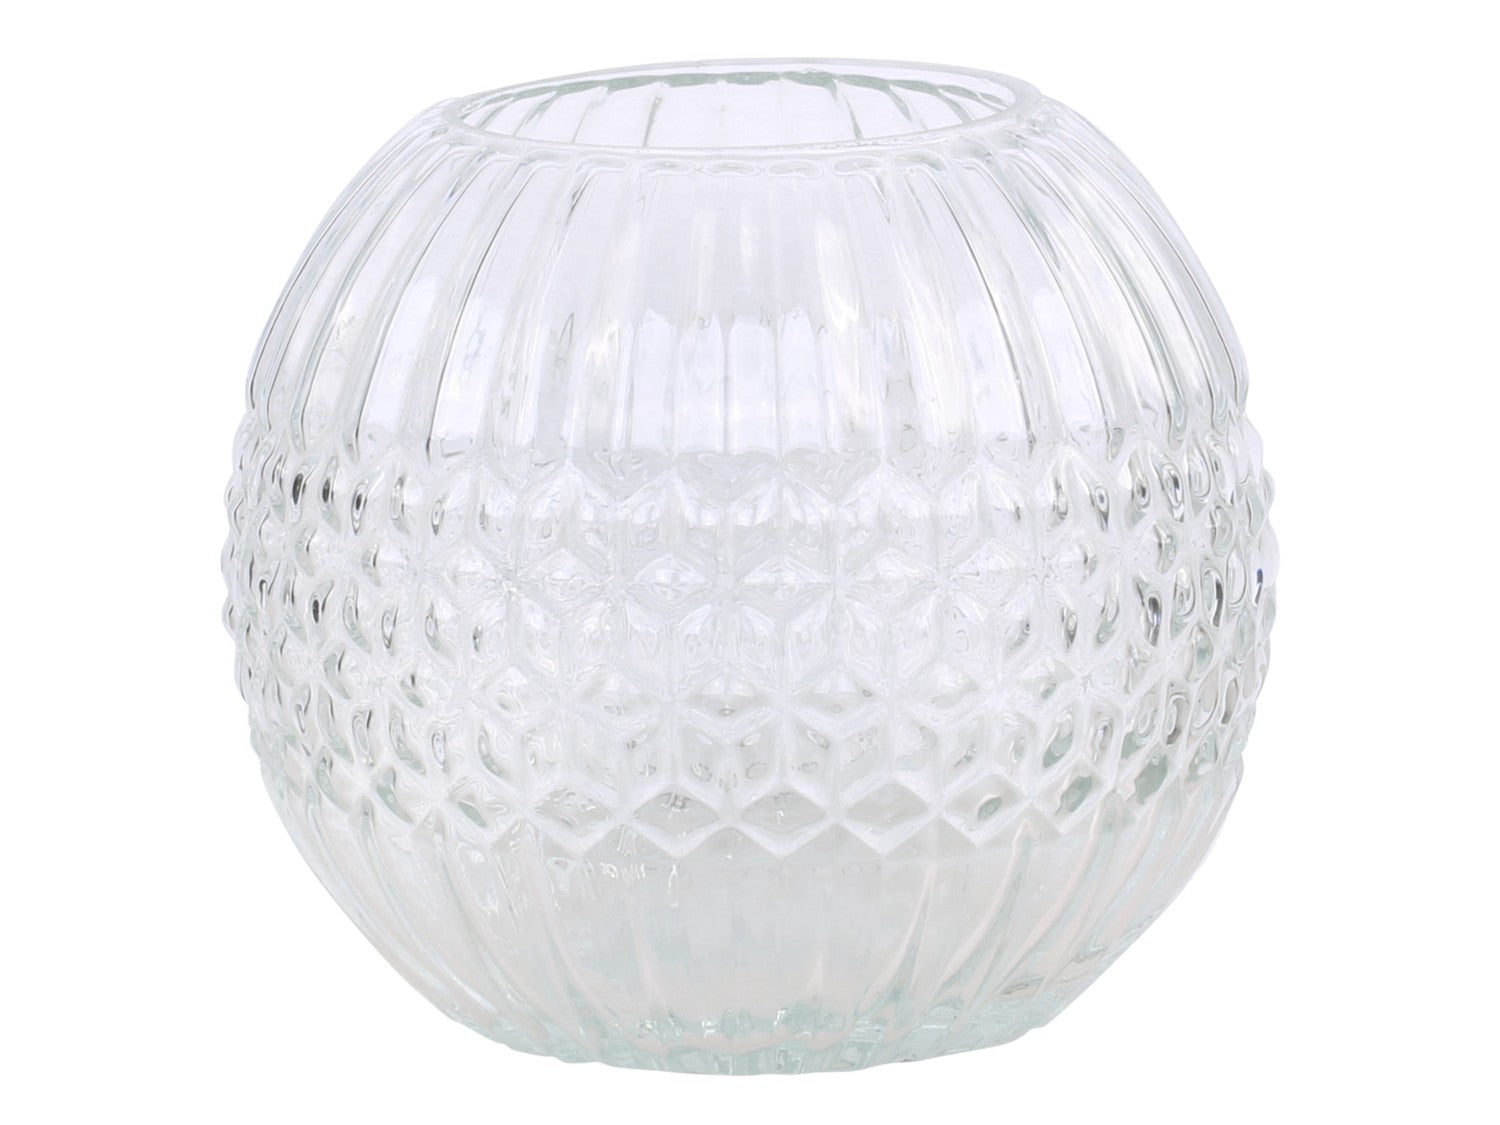 Chic Antique Vase Windlicht Glas Klas Muster